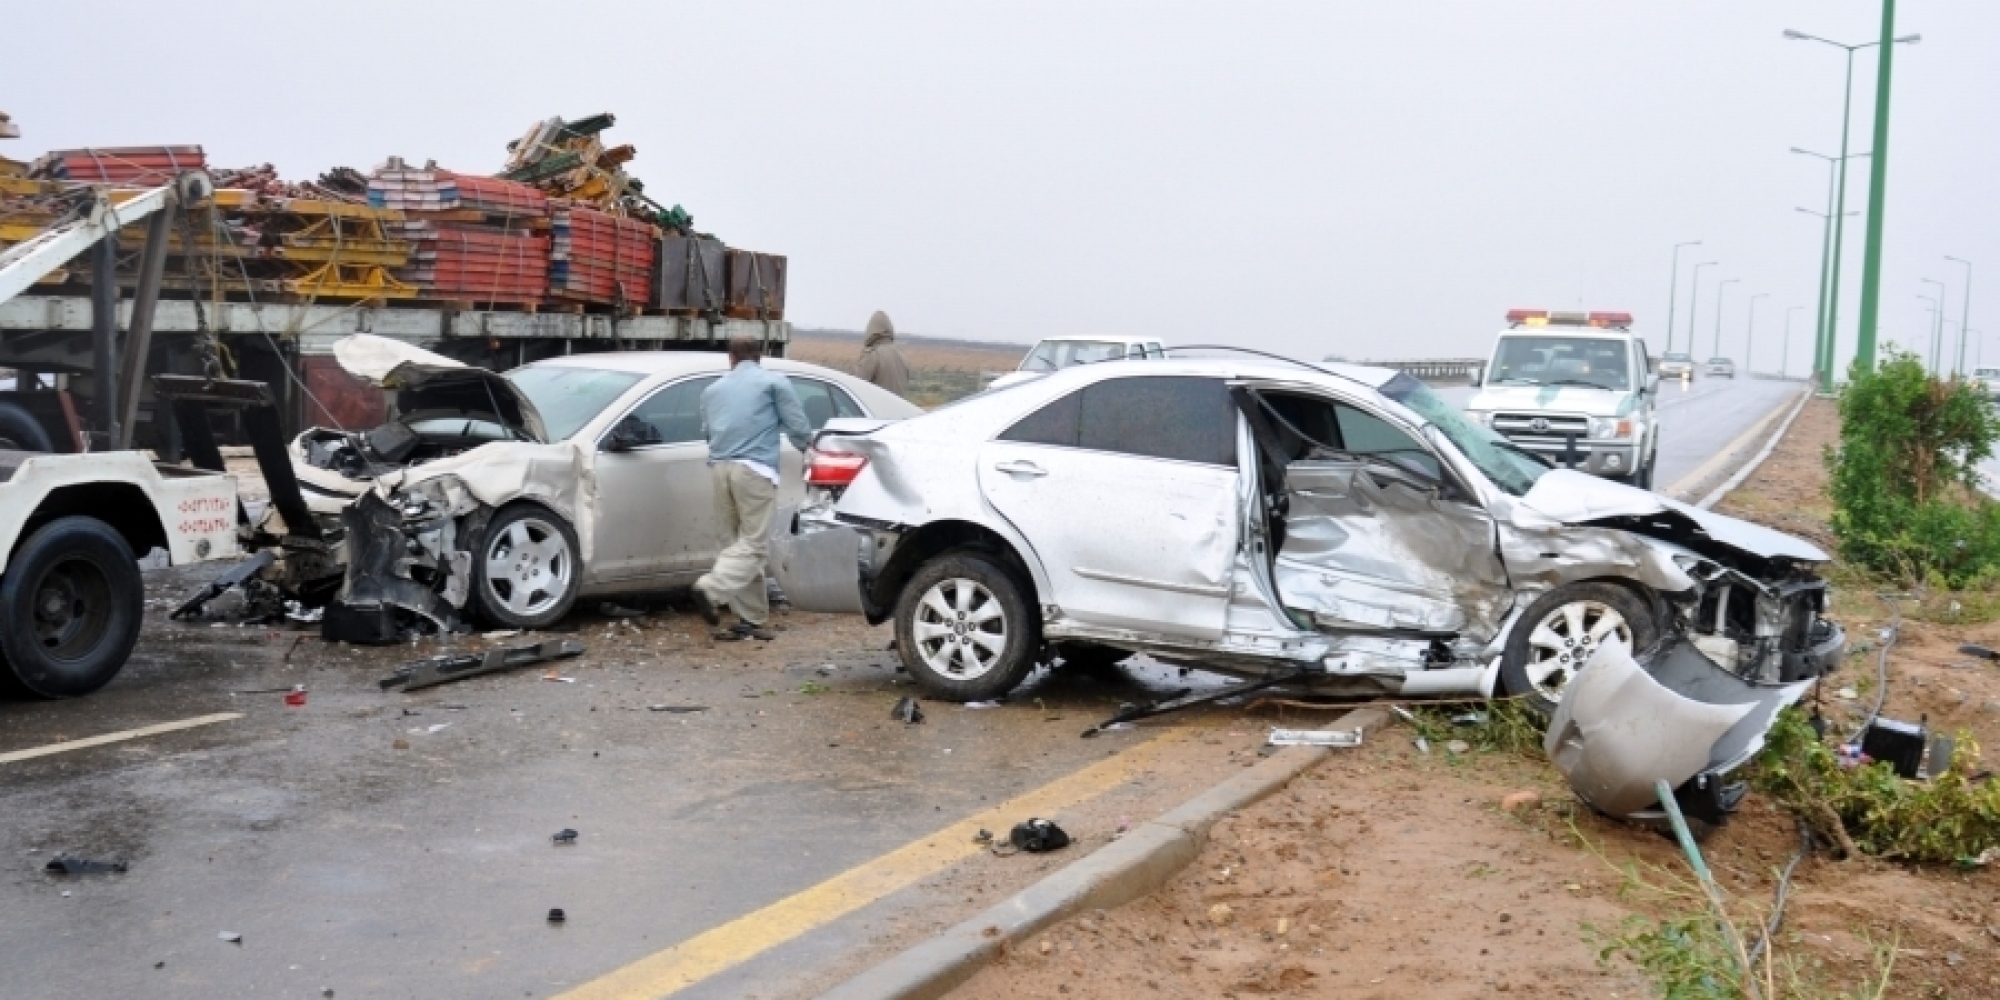 "أمن الطرق" توجه إرشادات لقائدي المركبات للوقاية من الحوادث 9